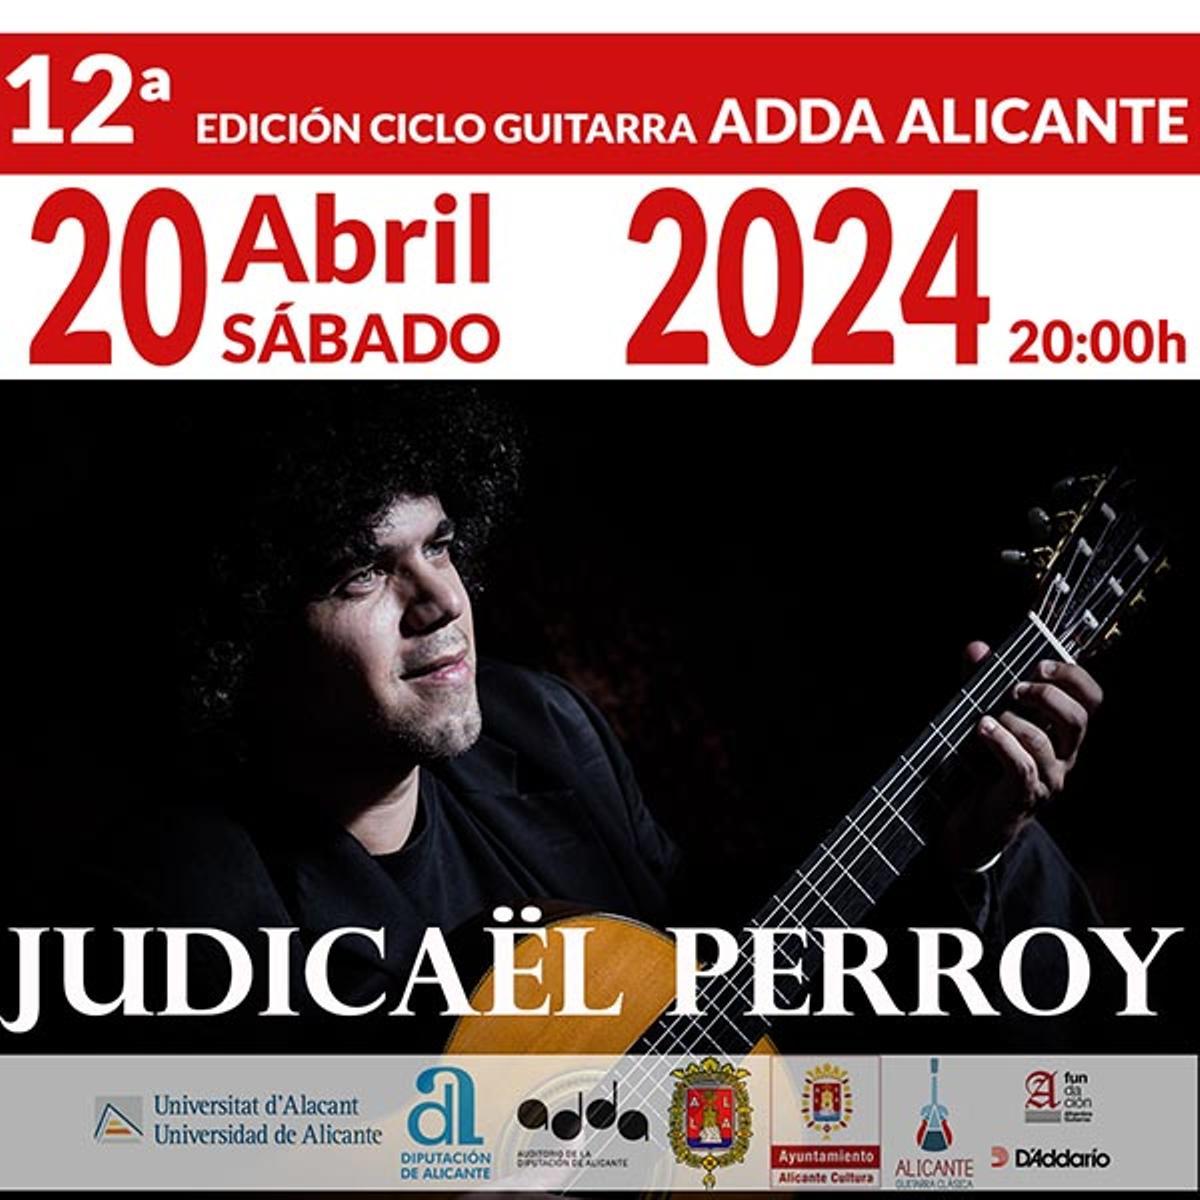 Cartel oficial del concierto de Judicaël Perroy en el ADDA